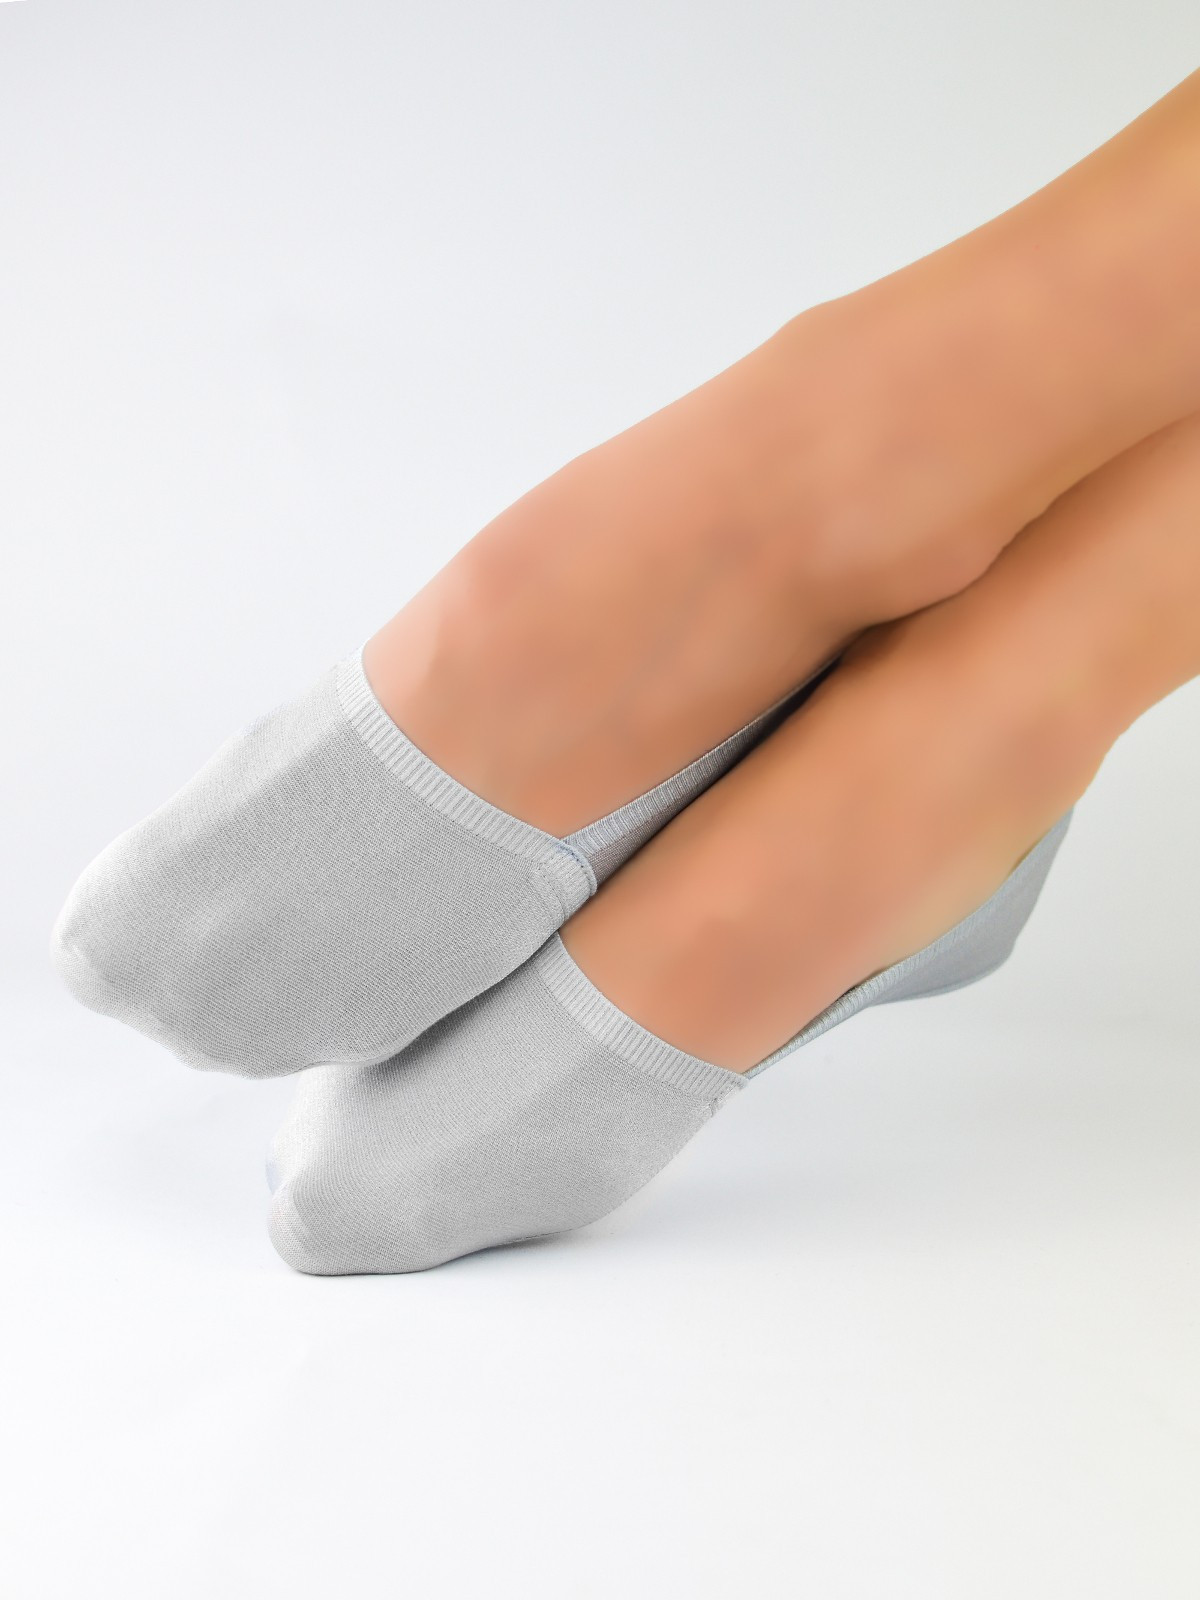 Dámské ponožky - baleríny Noviti SN024 Laserové, Silikon, ABS Béžová 36-41